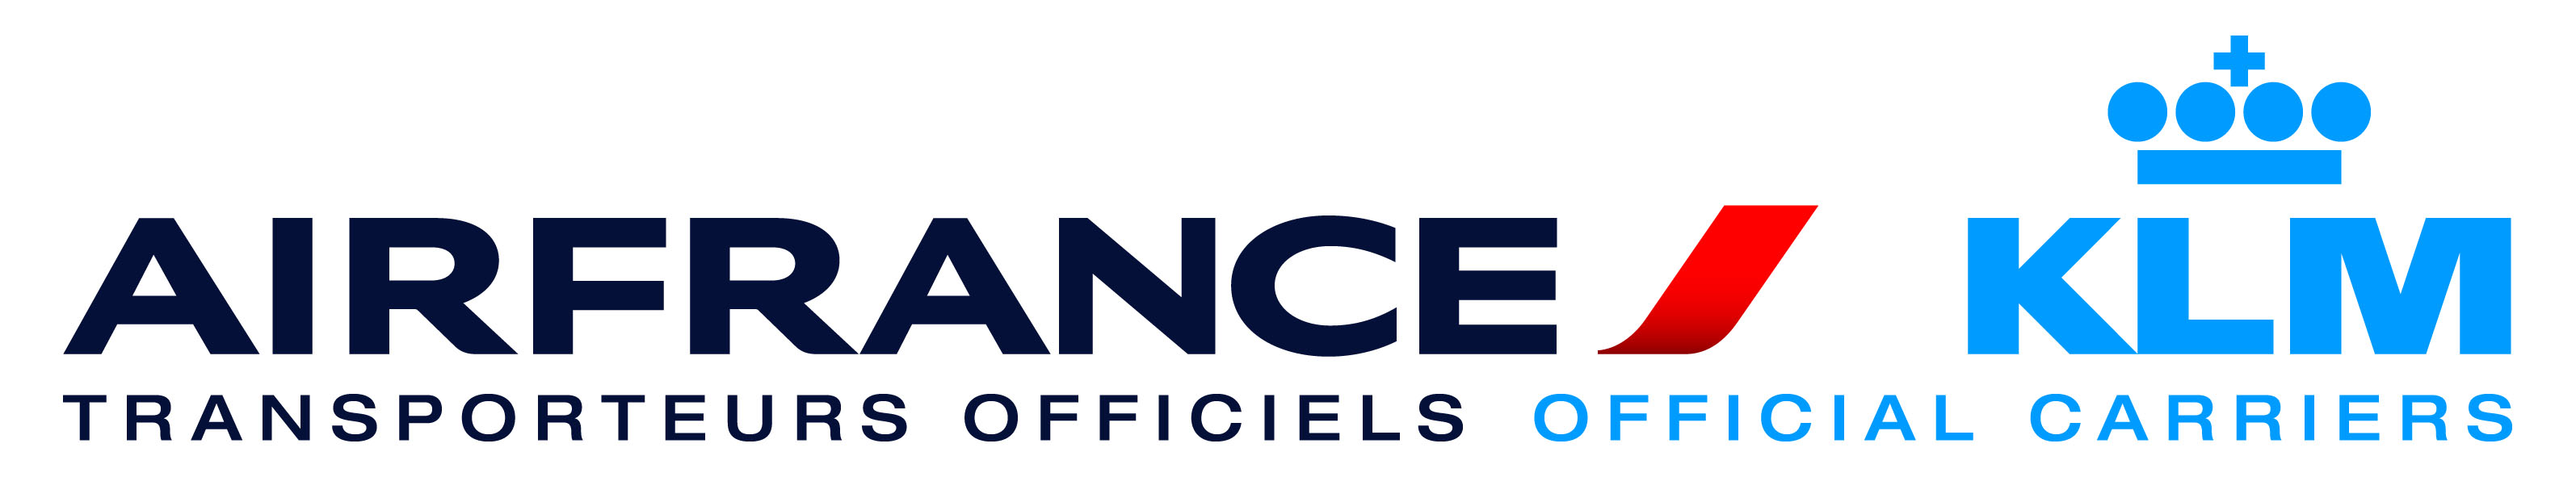 Air France Logo Vector PNG - 112350